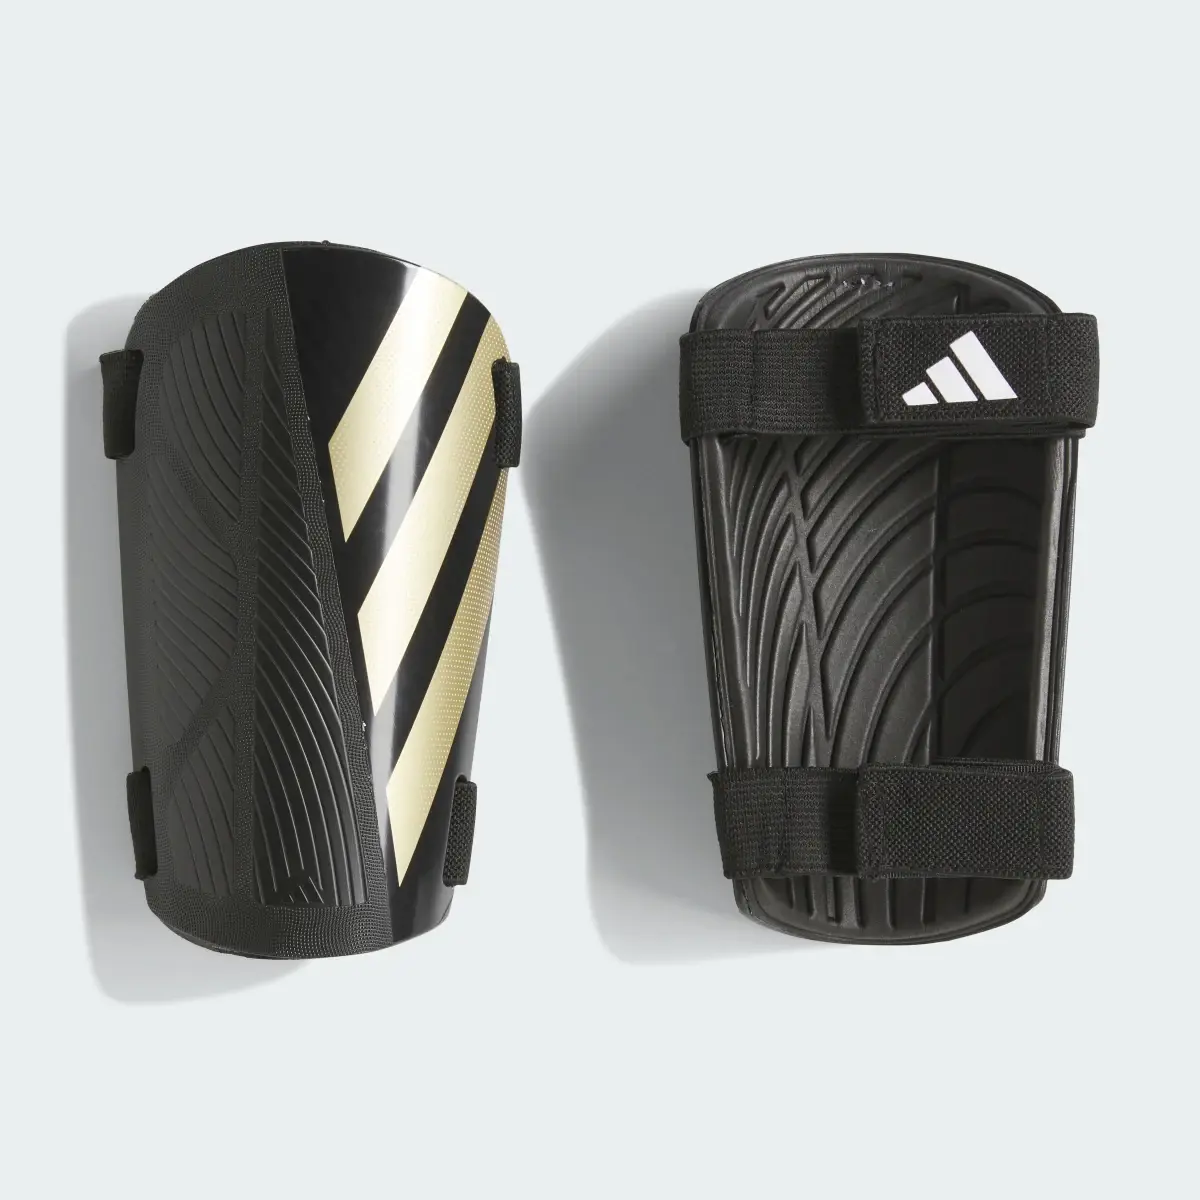 Adidas Ochraniacze na golenie Tiro Training. 2